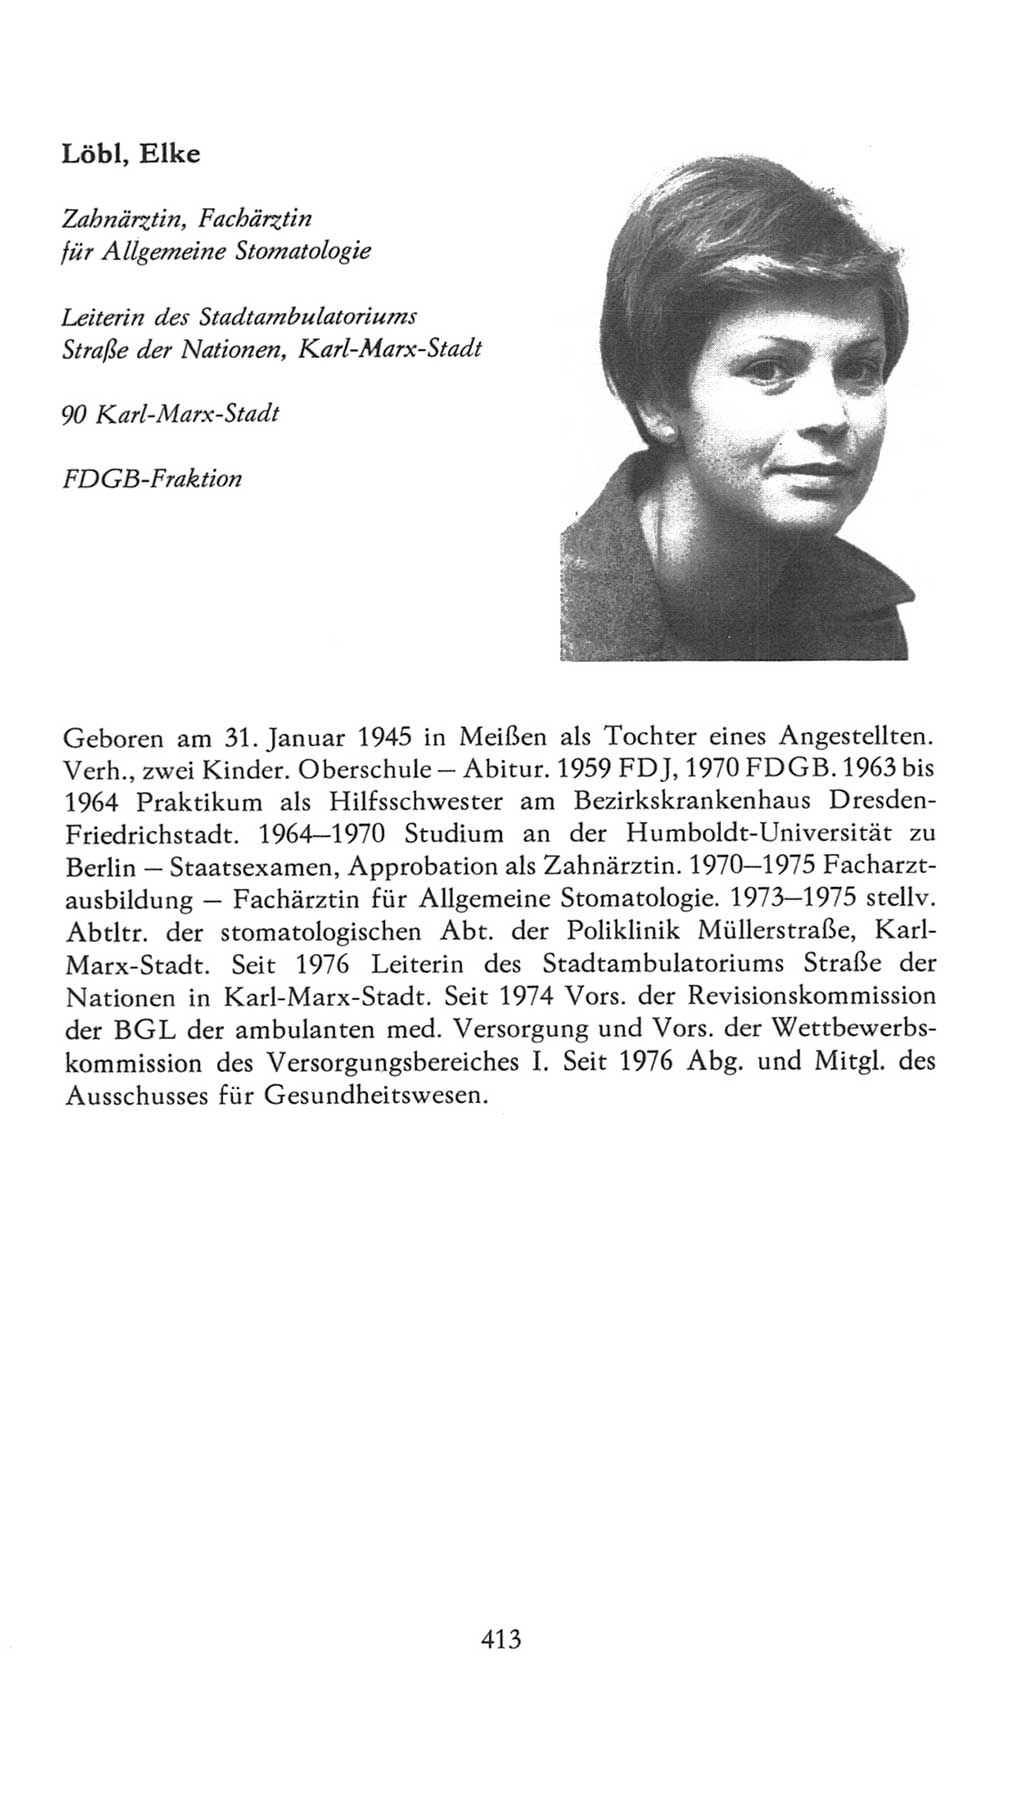 Volkskammer (VK) der Deutschen Demokratischen Republik (DDR), 7. Wahlperiode 1976-1981, Seite 413 (VK. DDR 7. WP. 1976-1981, S. 413)